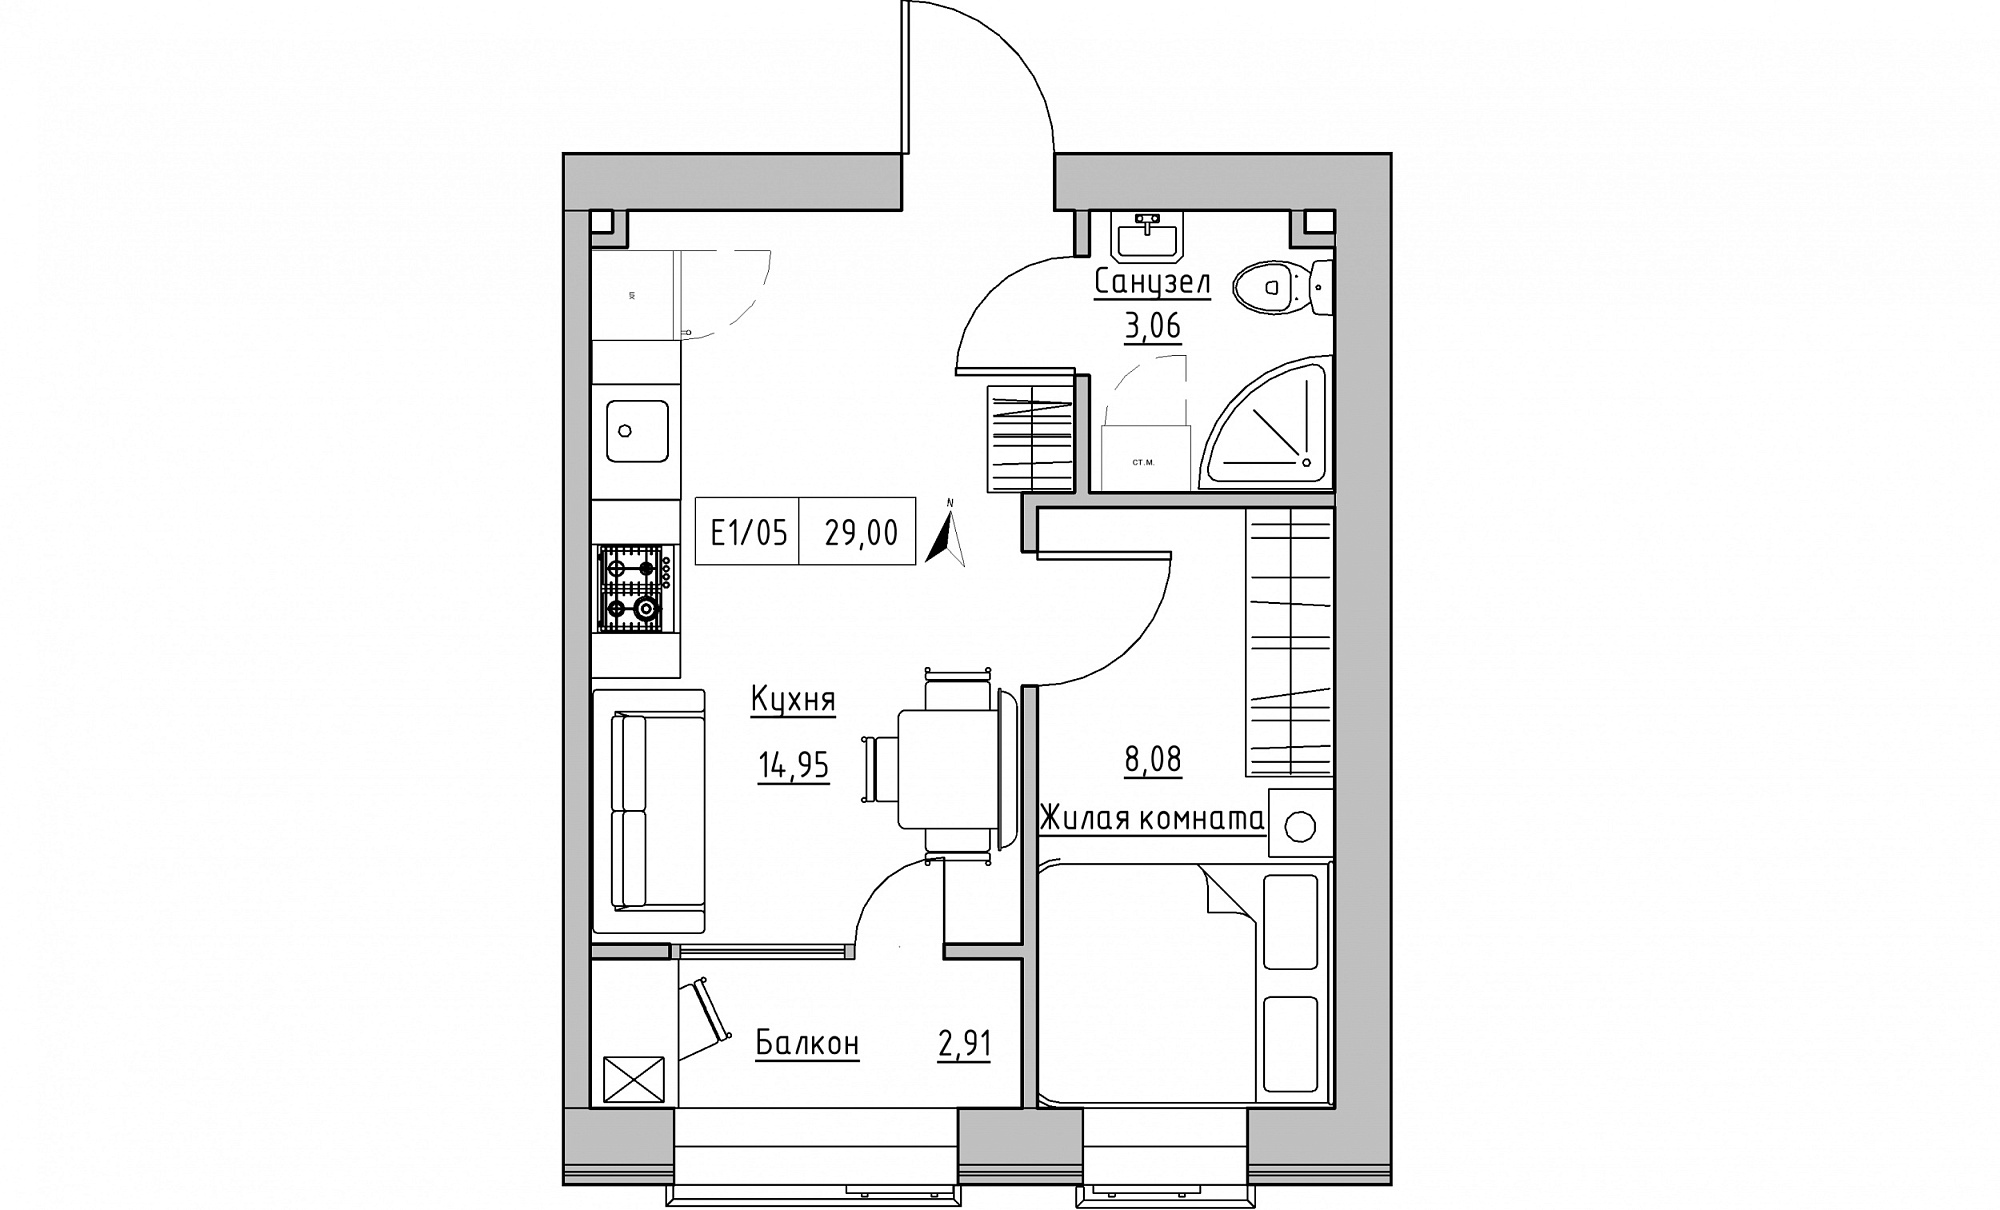 Планировка 1-к квартира площей 29м2, KS-015-04/0009.